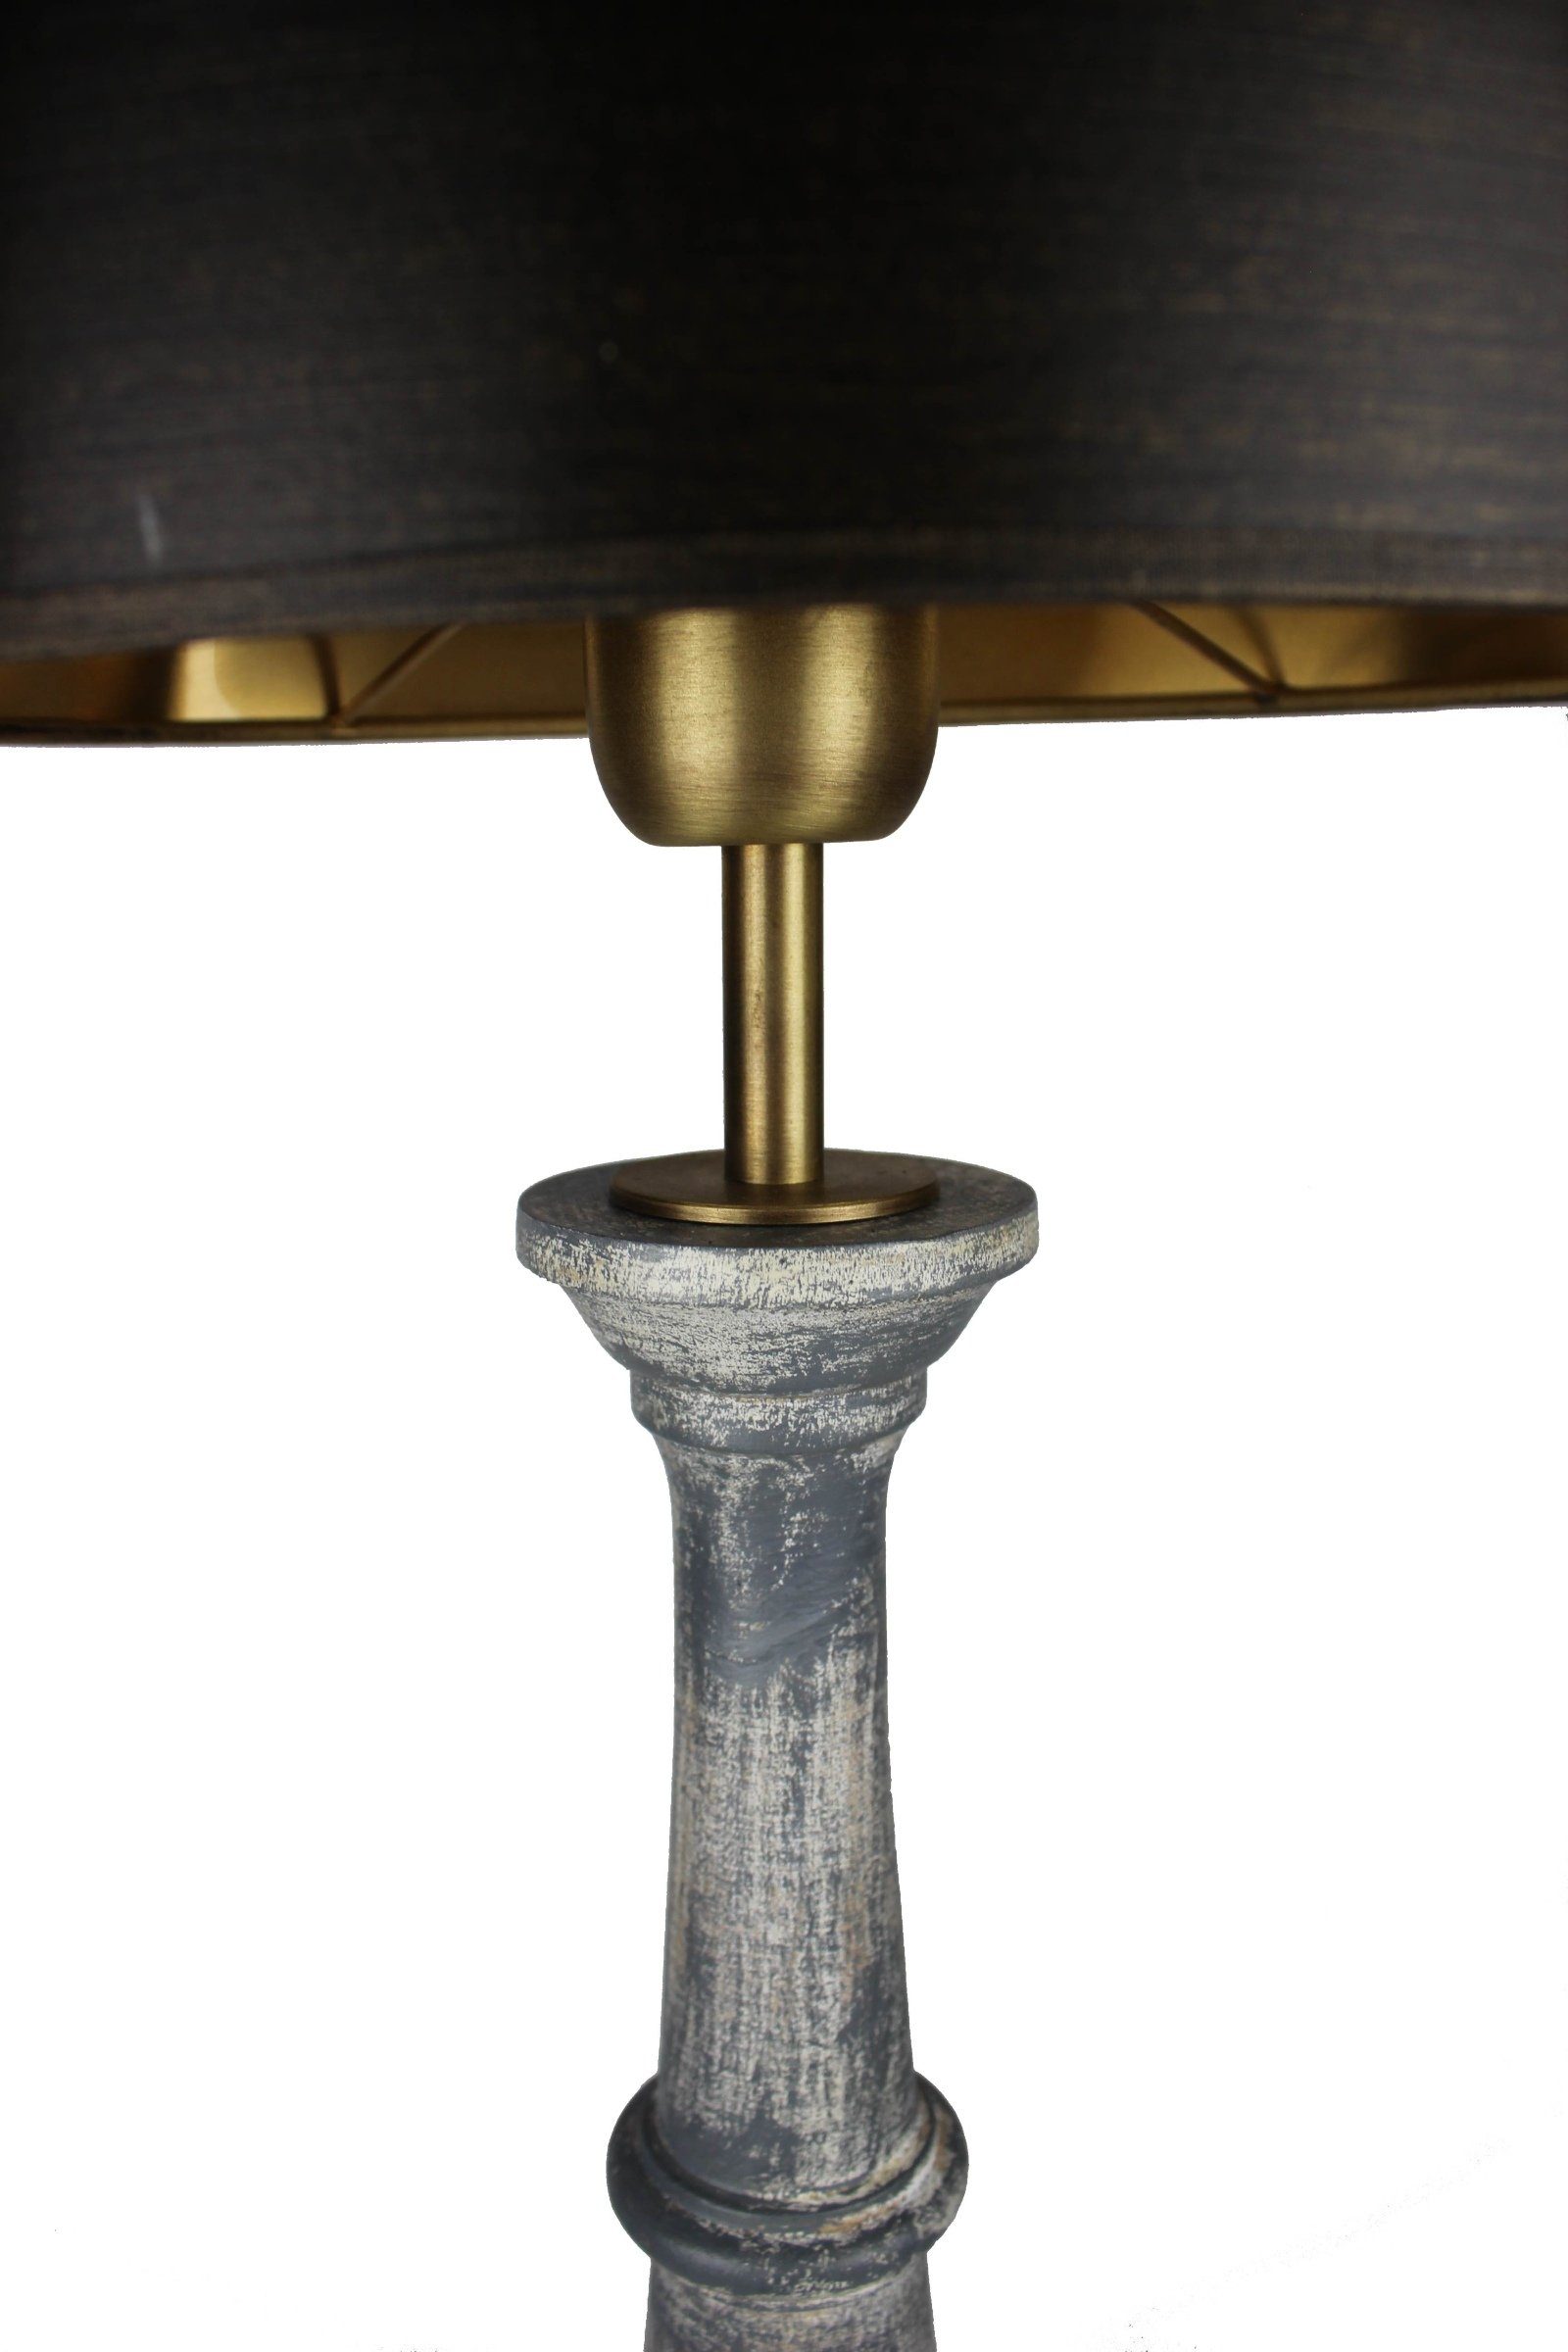 Leuchte Tischlampe Signature ohne Schirm grau Leuchtmittel, Home aus schwarz, mit Collection warmweiß, handgefertigte Schreibtischlampe Holz Italien gedrechselt